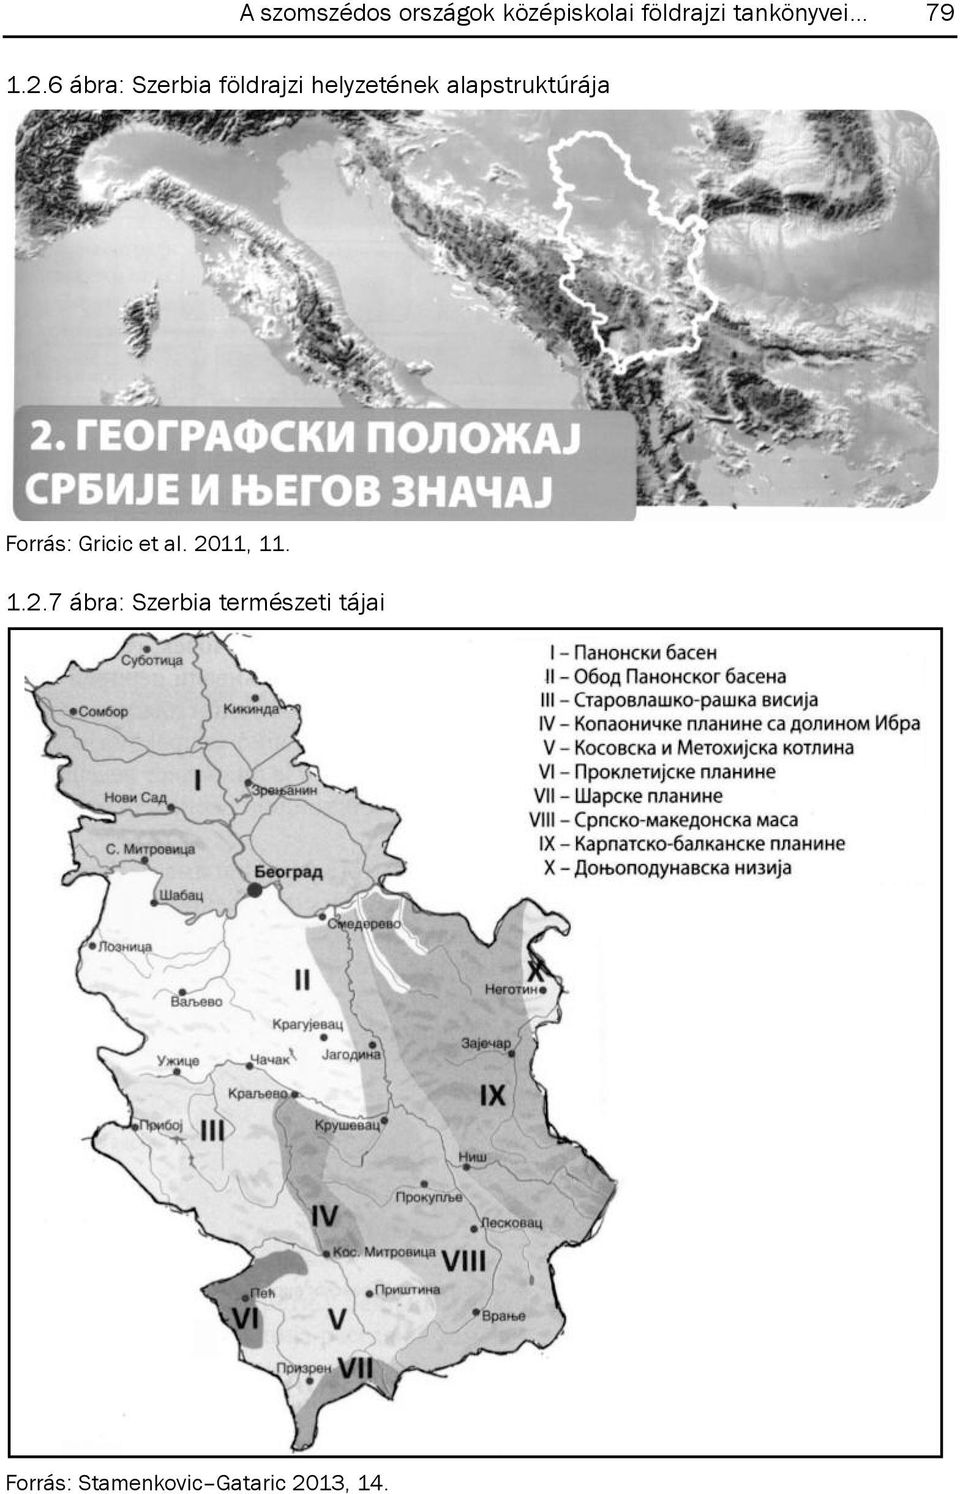 6 ábra: Szerbia földrajzi helyzetének alapstruktúrája